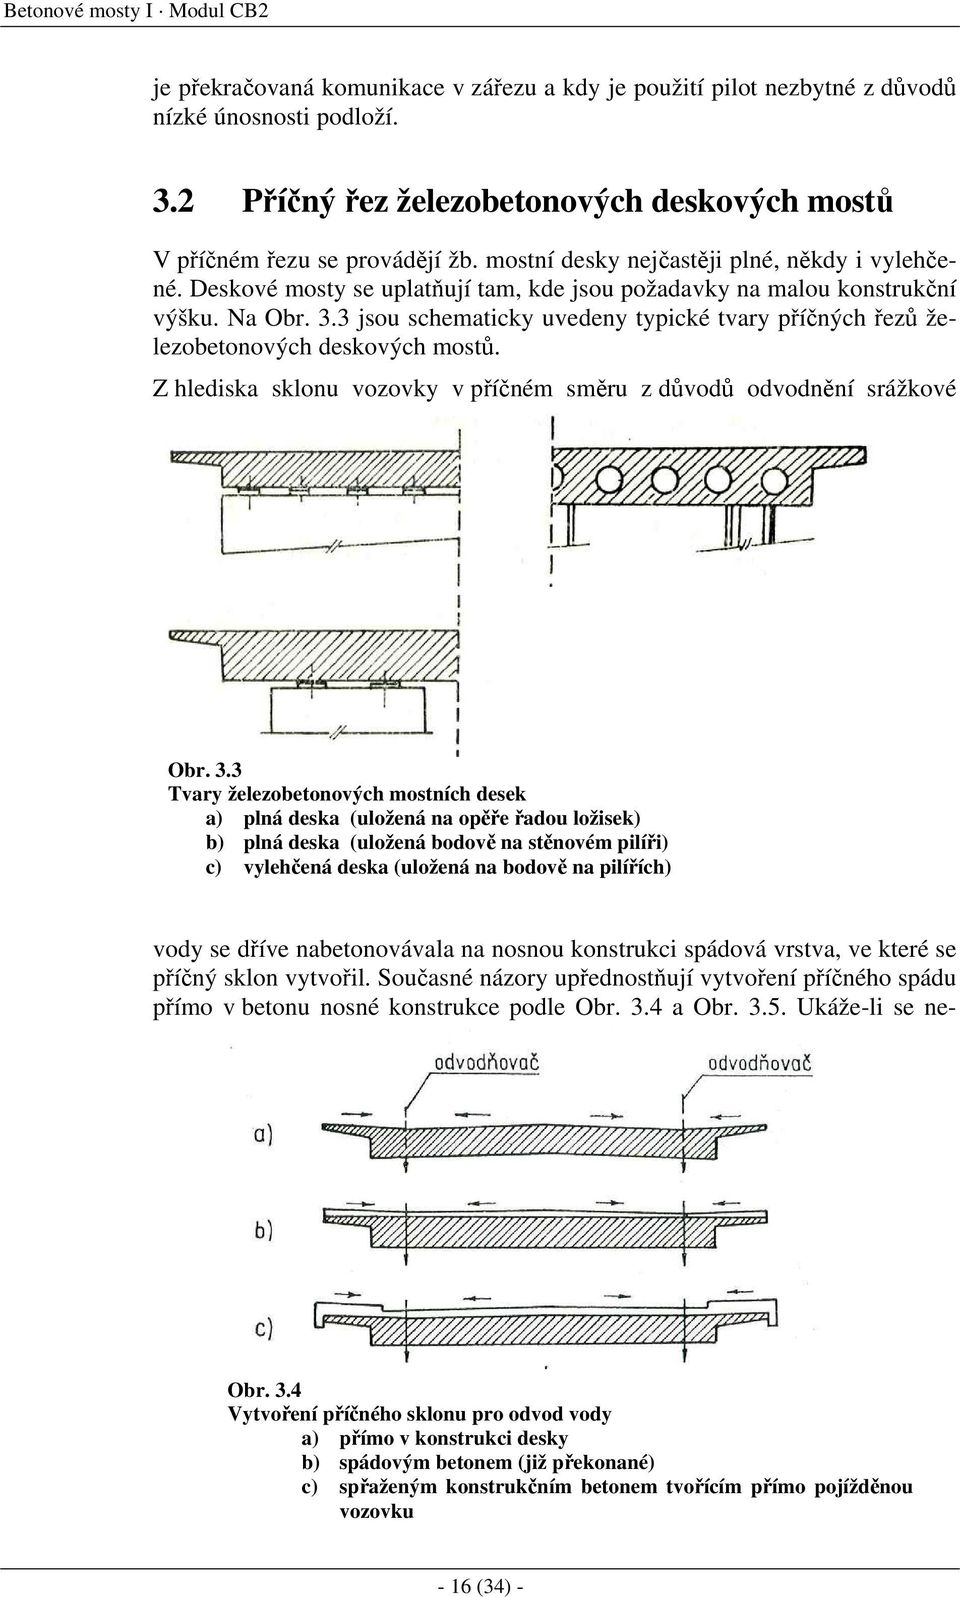 Deskové mosty se uplatňují tam, kde jsou požadavky na malou konstrukční výšku. Na Obr. 3.3 jsou schematicky uvedeny typické tvary příčných řezů železobetonových deskových mostů.